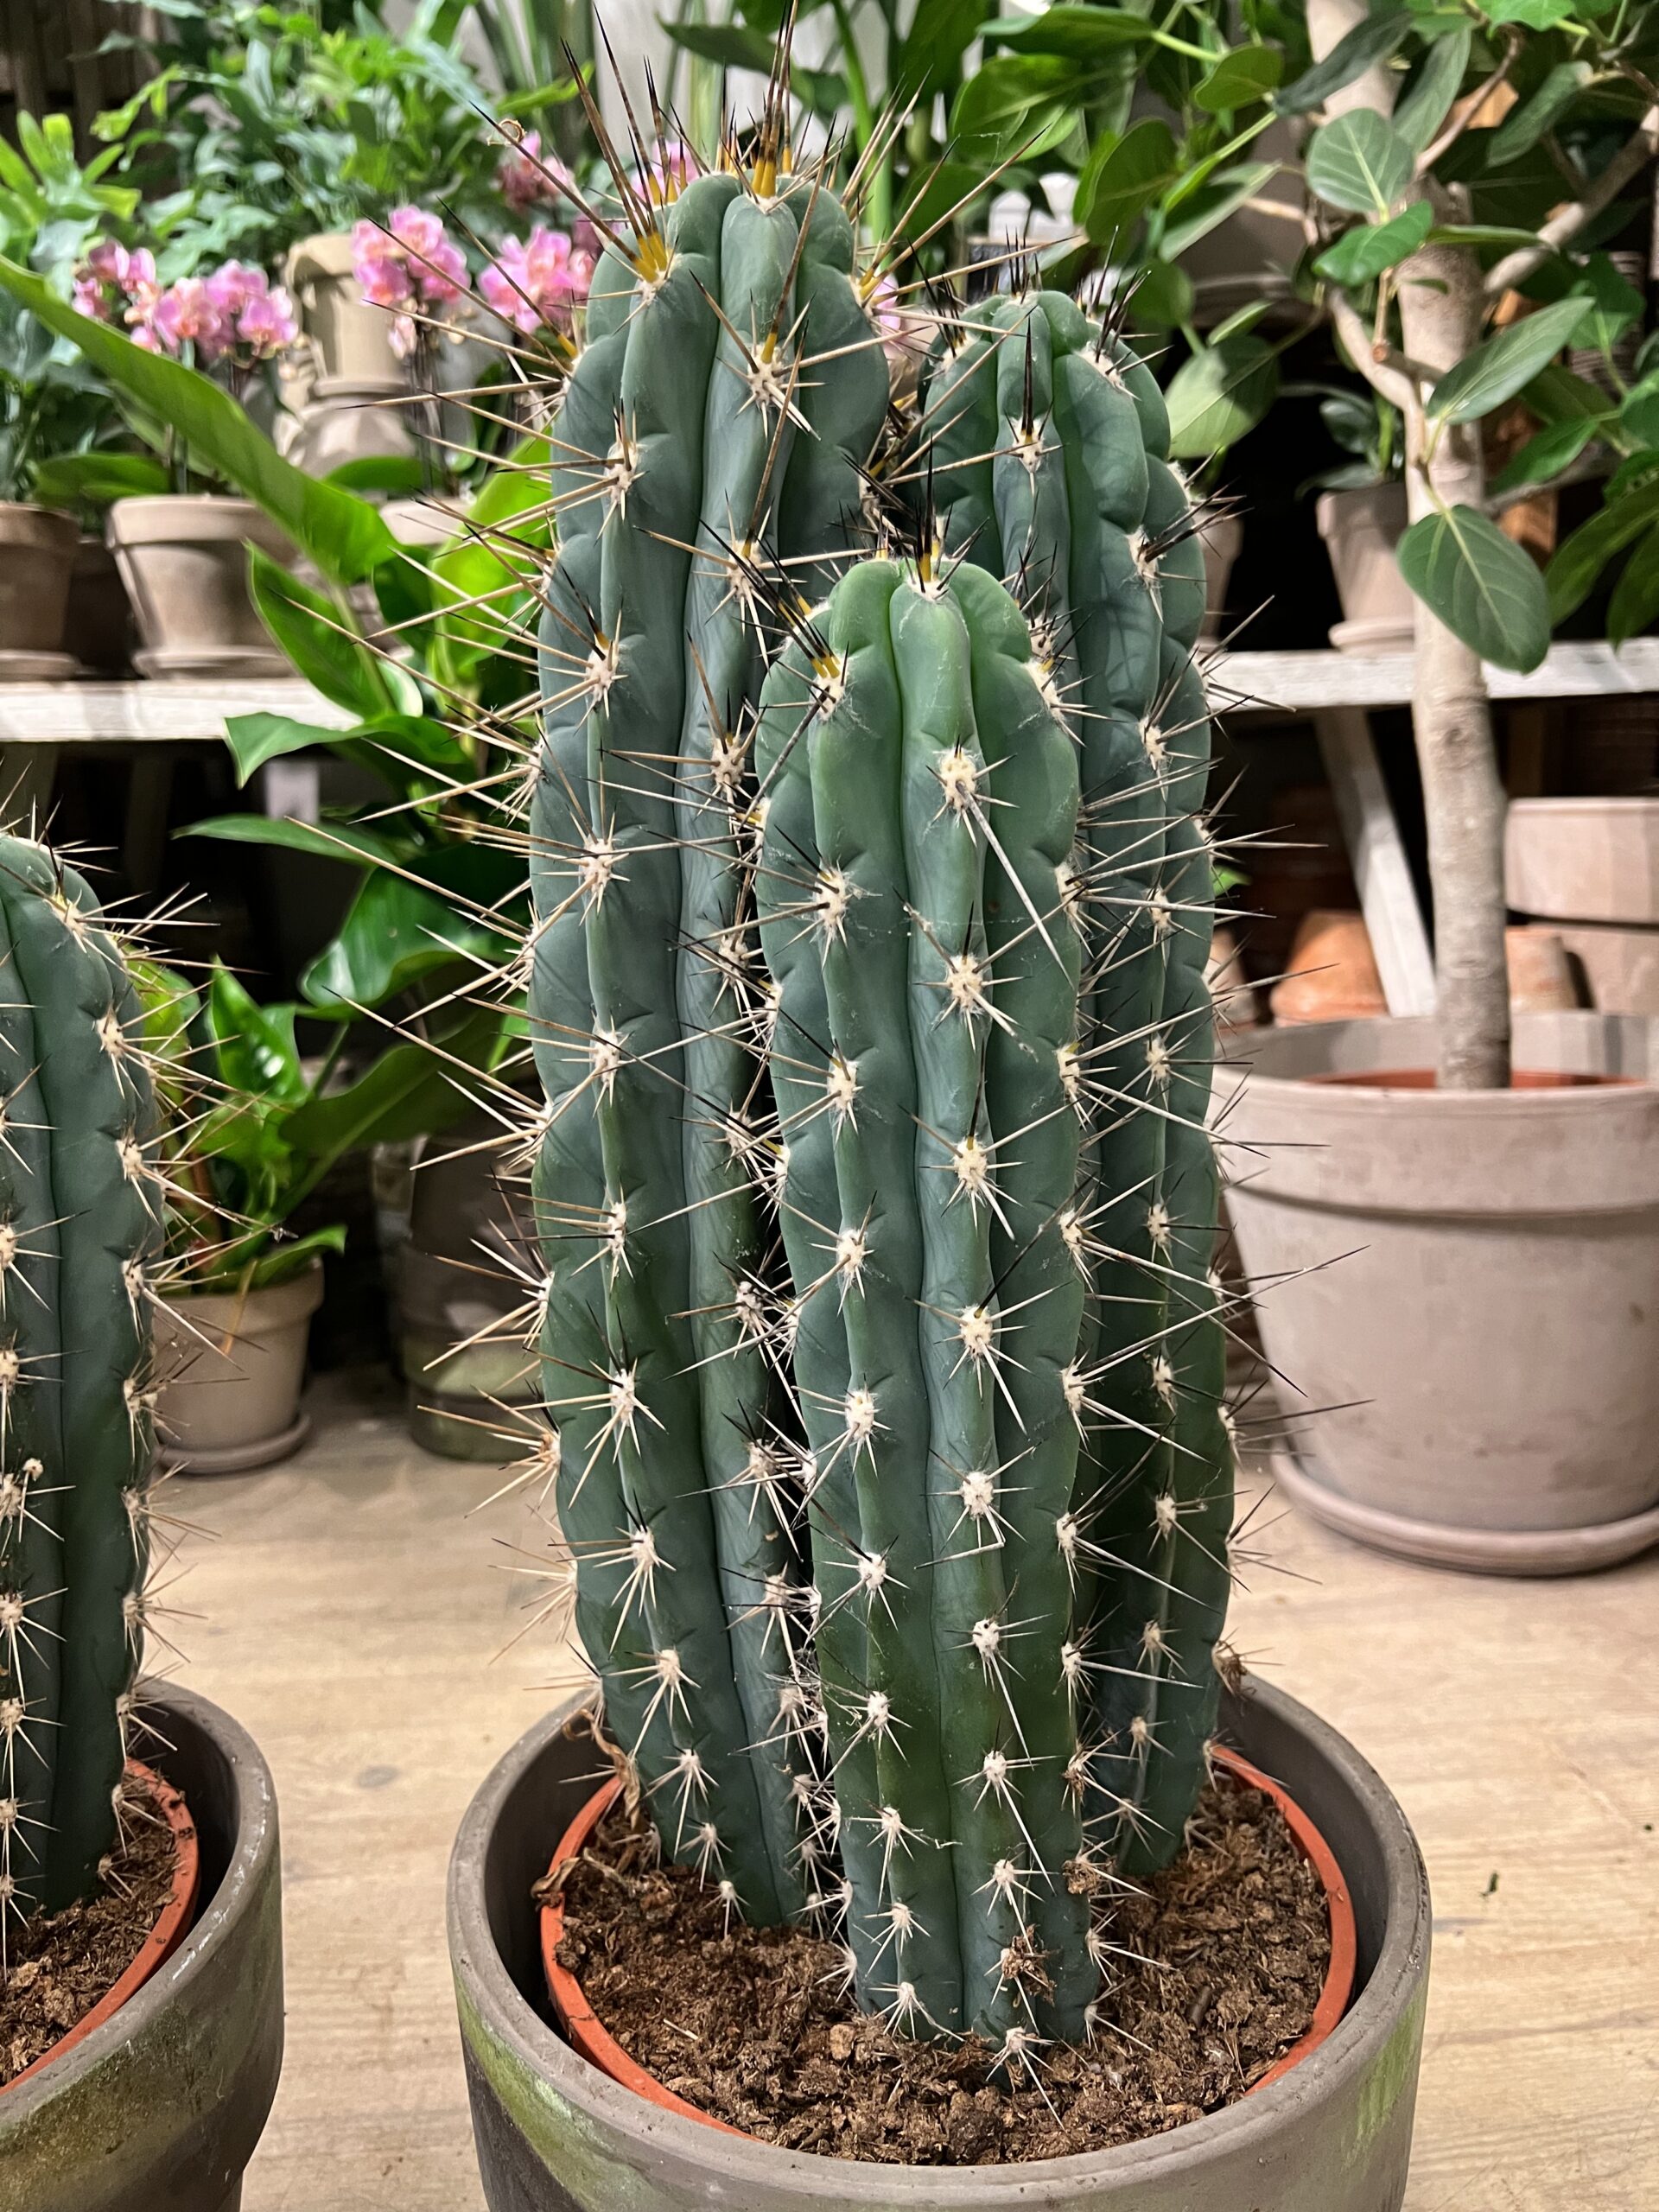 Kaktus-Groenne-planter-billigt-online-Happyflower-dk-scaled